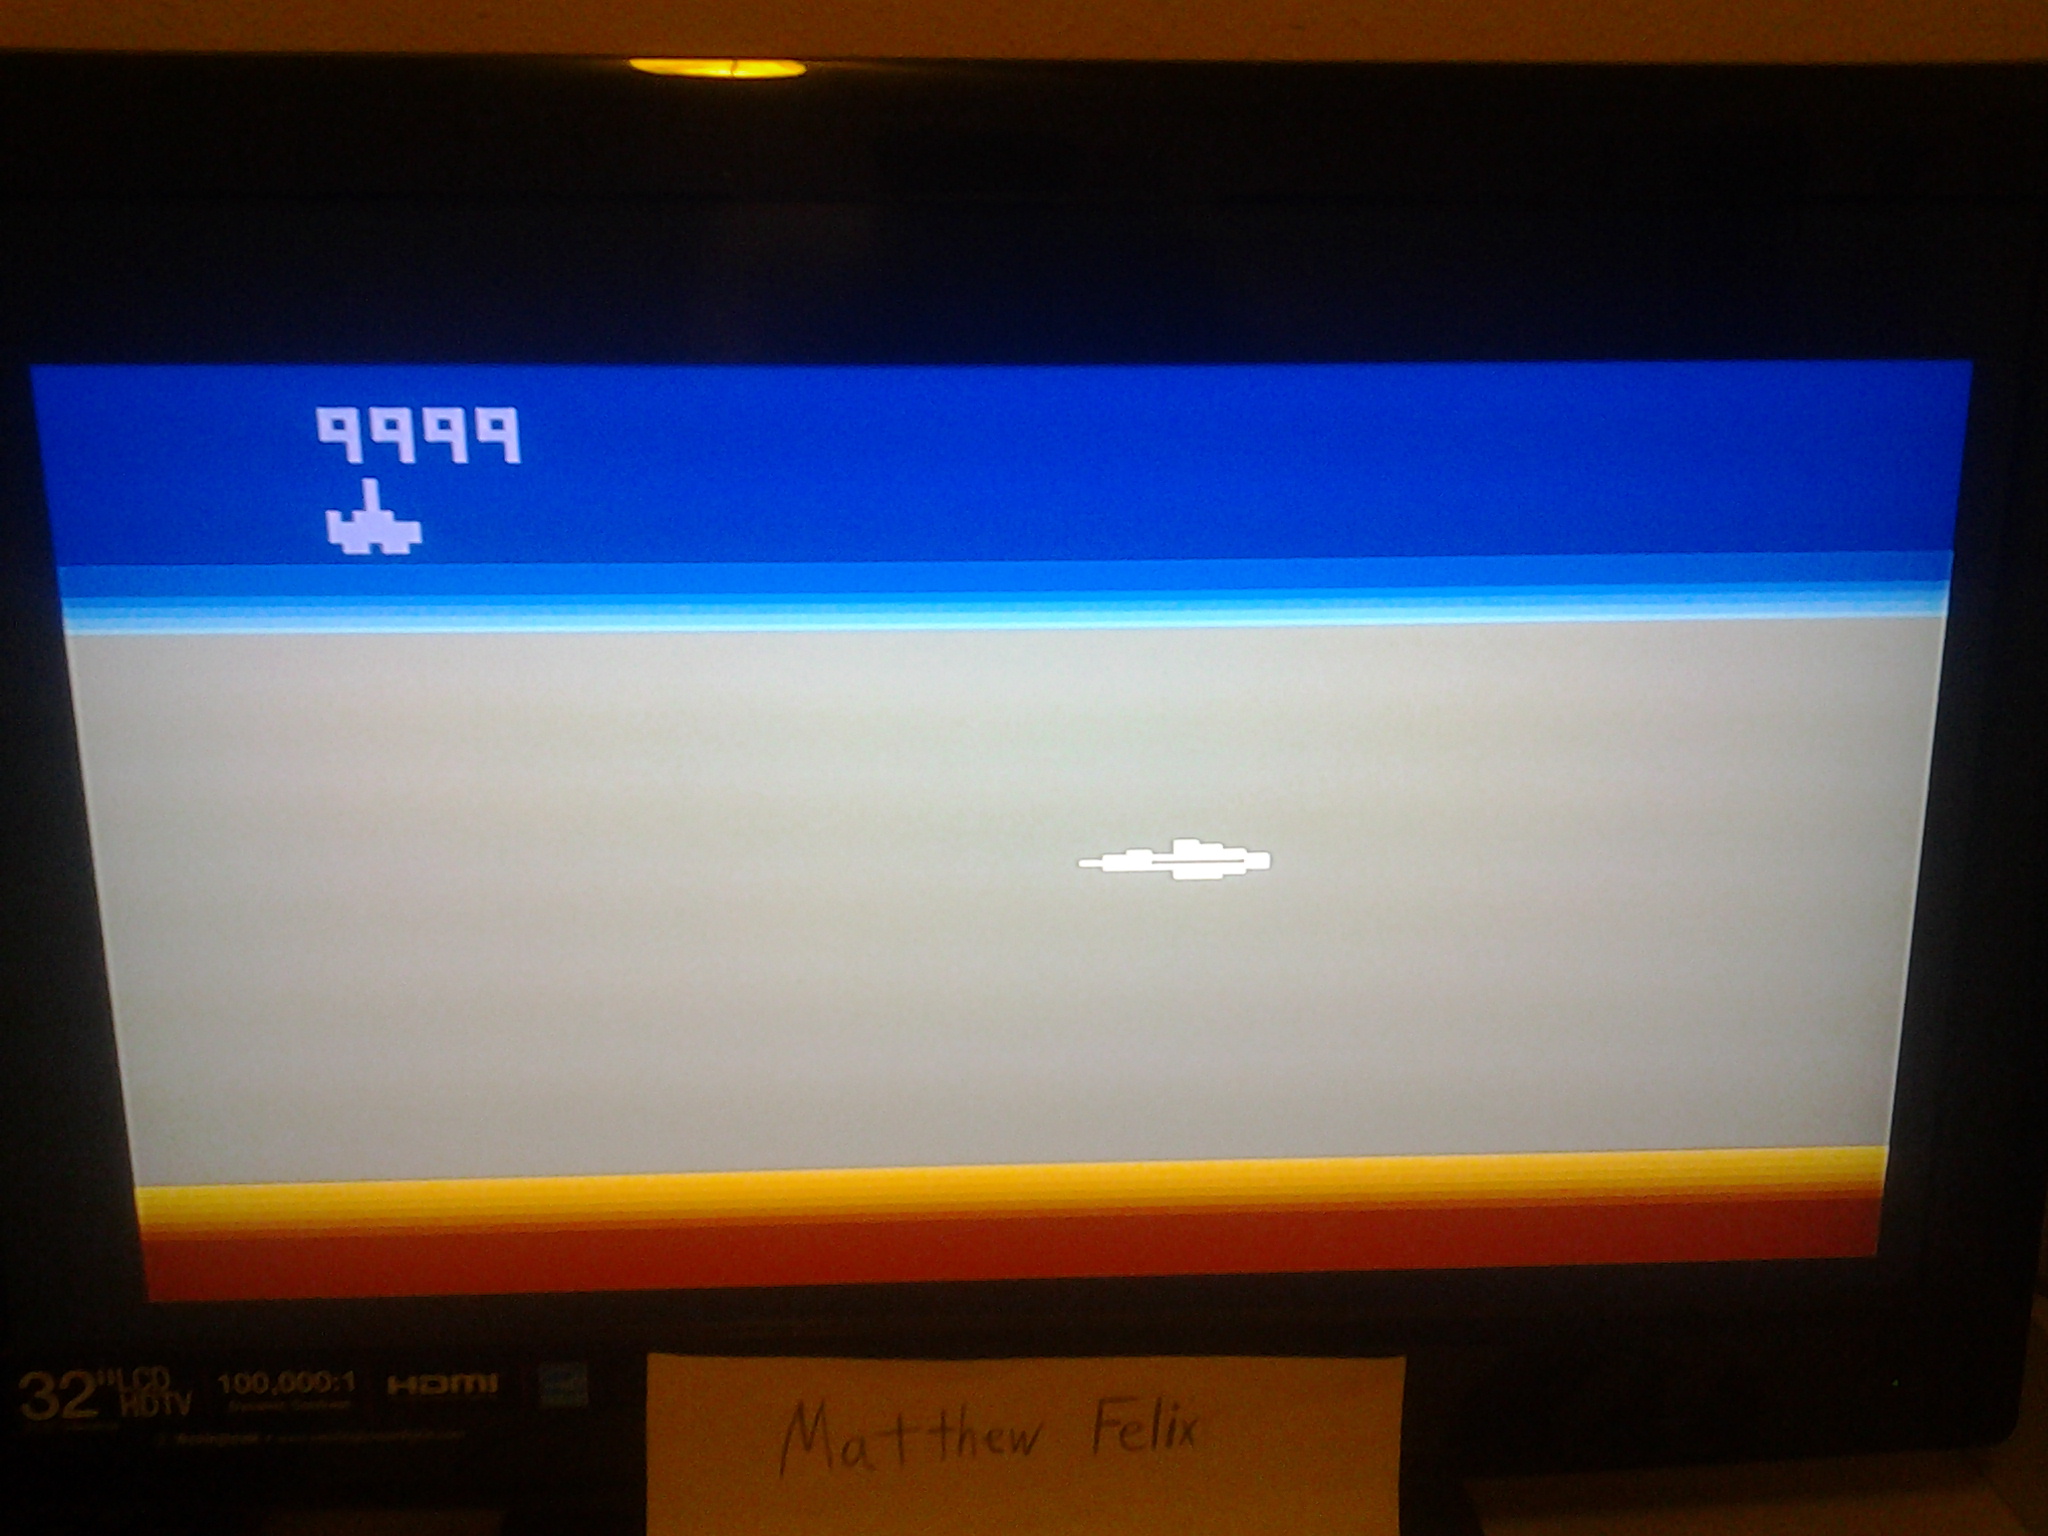 MatthewFelix: Star Fox (Atari 2600 Emulated) 9,999 points on 2014-04-29 23:15:47